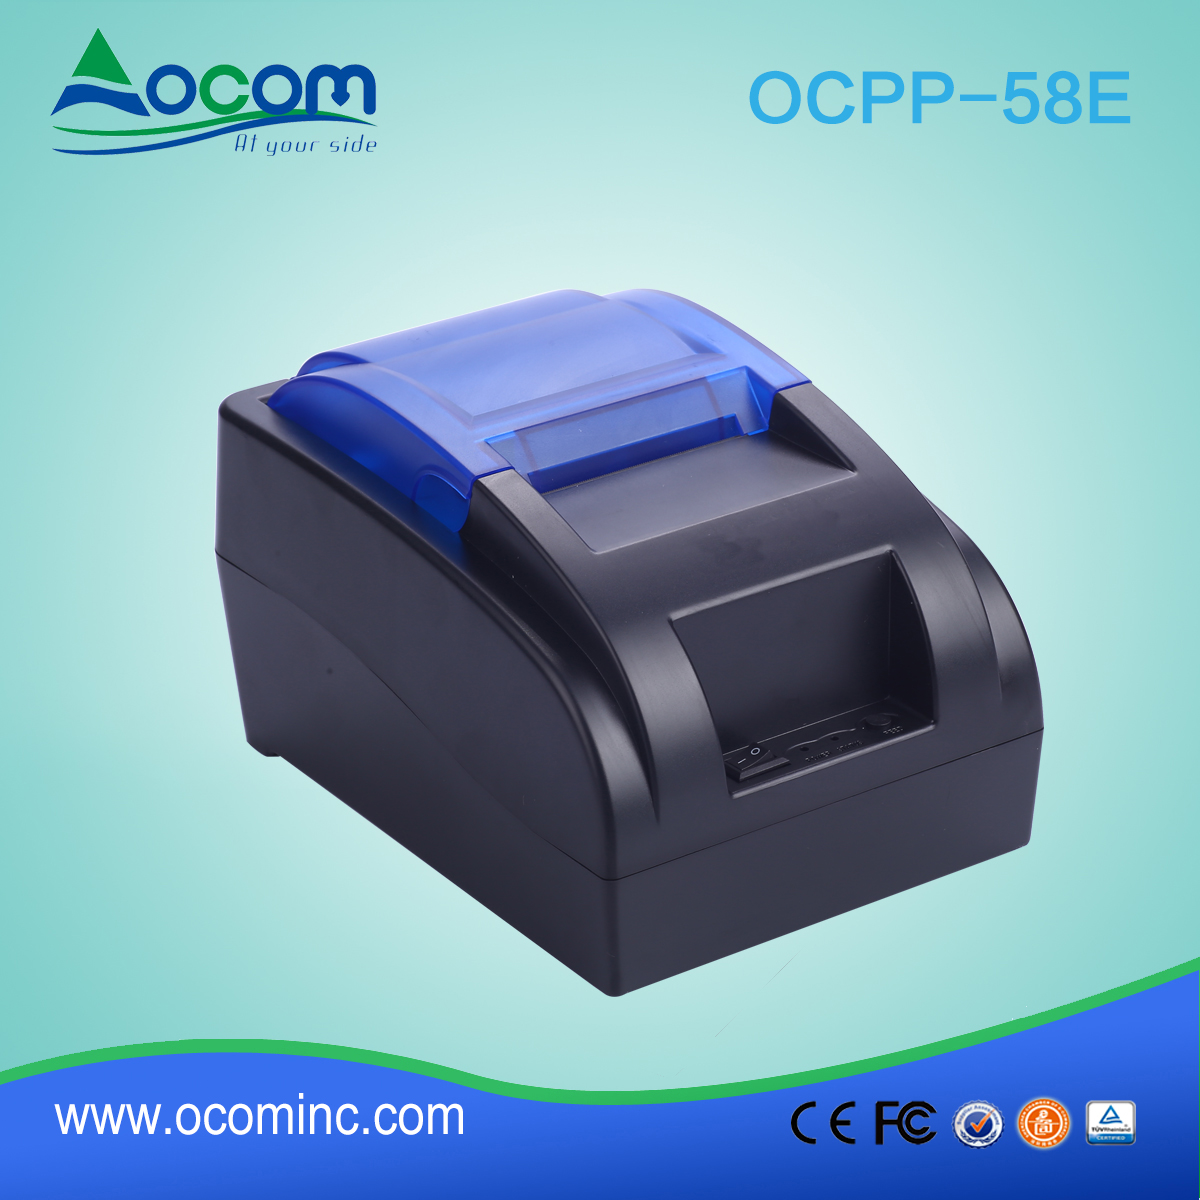 OCPP-58E-China machte niedrigen Kosten 58mm POS Drucker mit Bluetooth oder WIFI Option